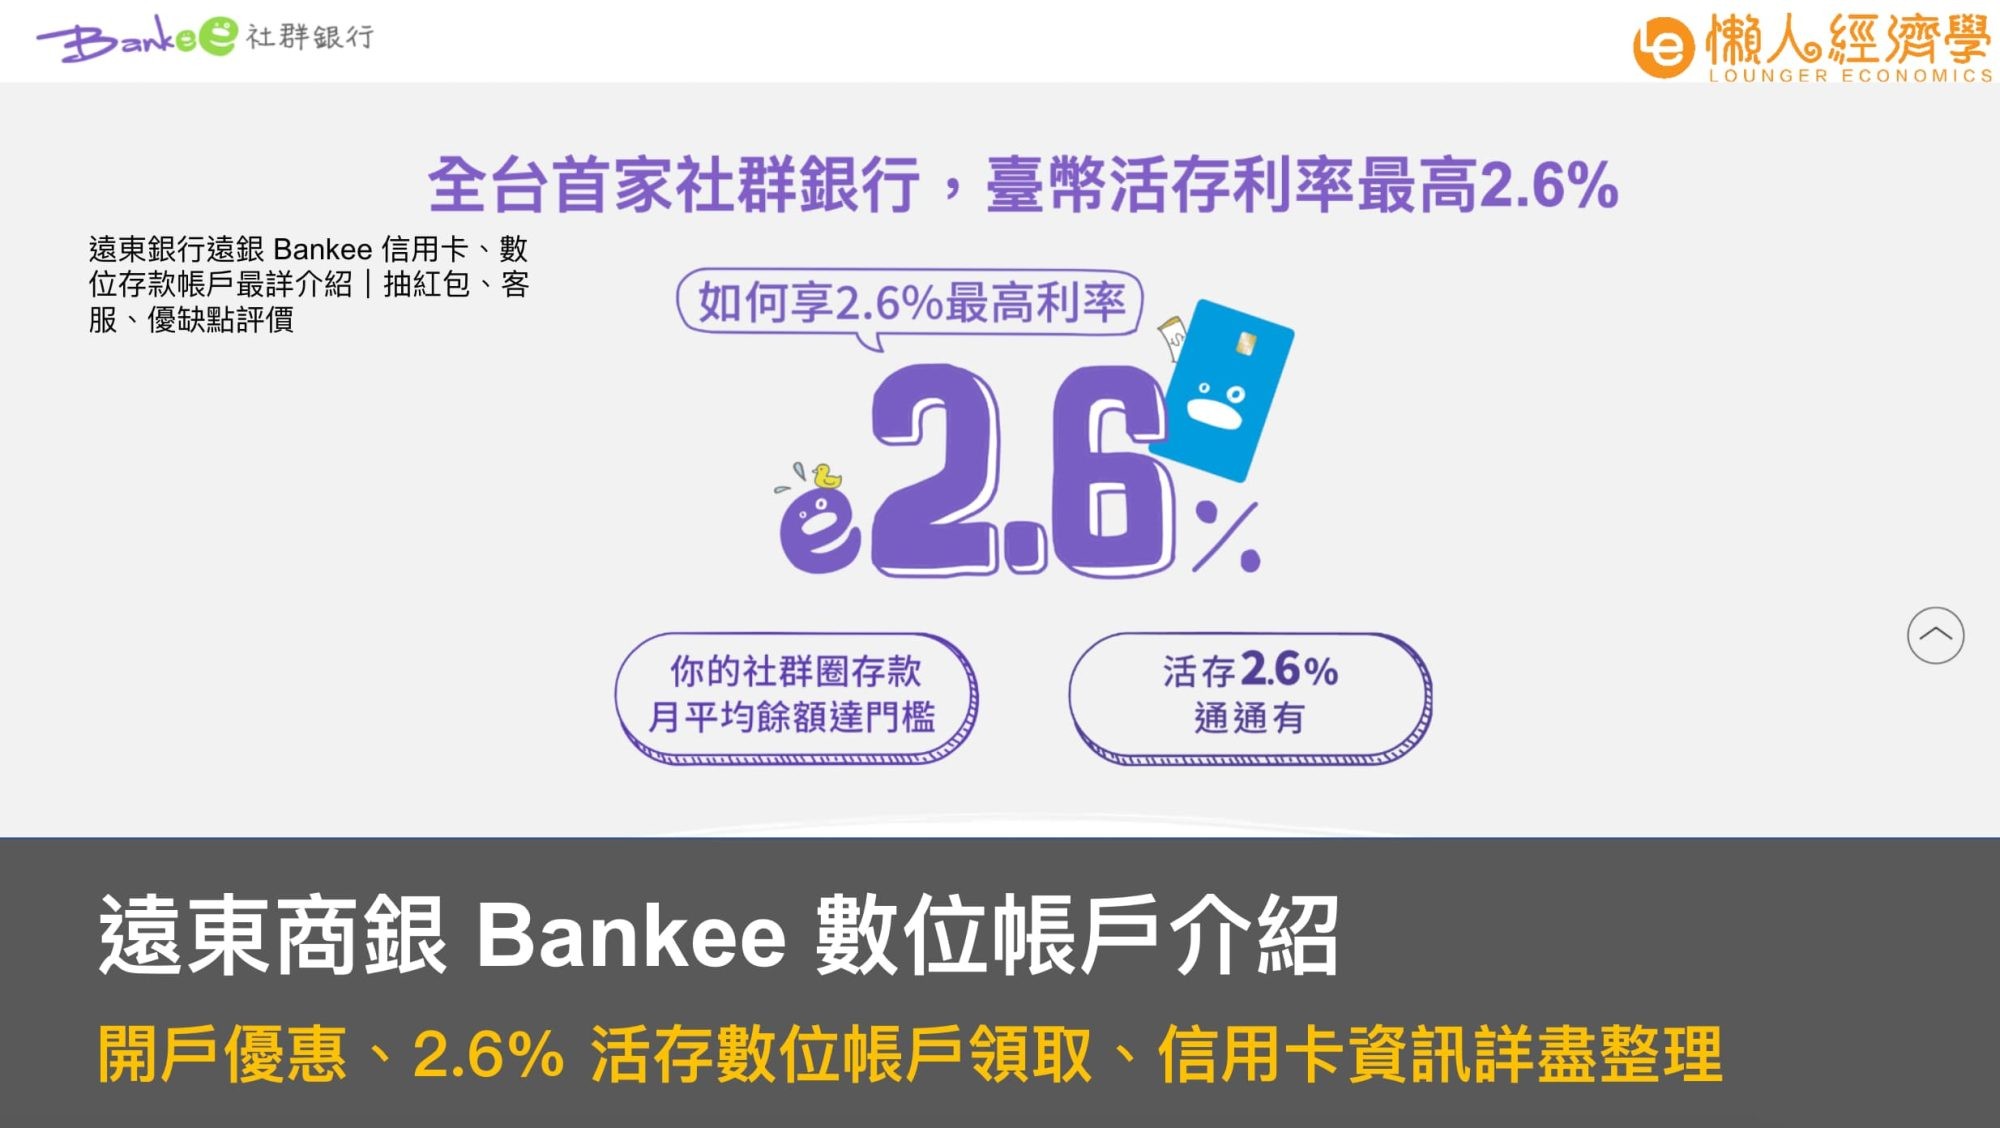 Bankee 數位帳戶介紹：開戶優惠、2.6% 活存數位帳戶領取、信用卡資訊詳盡整理